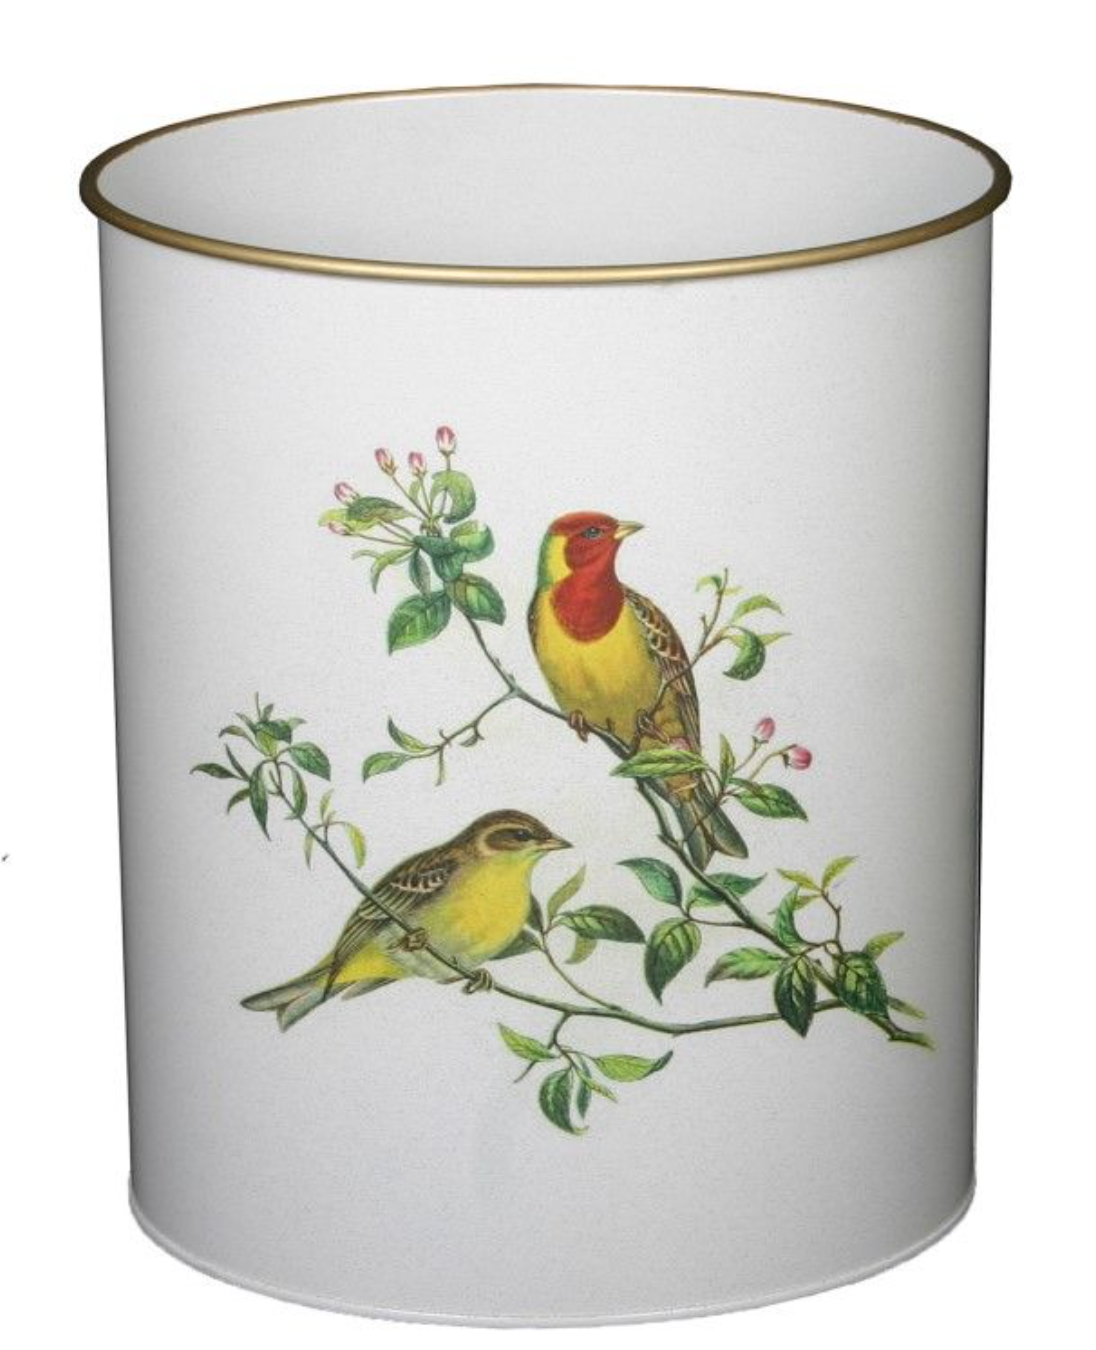 Oval Waste Paper Bin: Oriental Songbirds